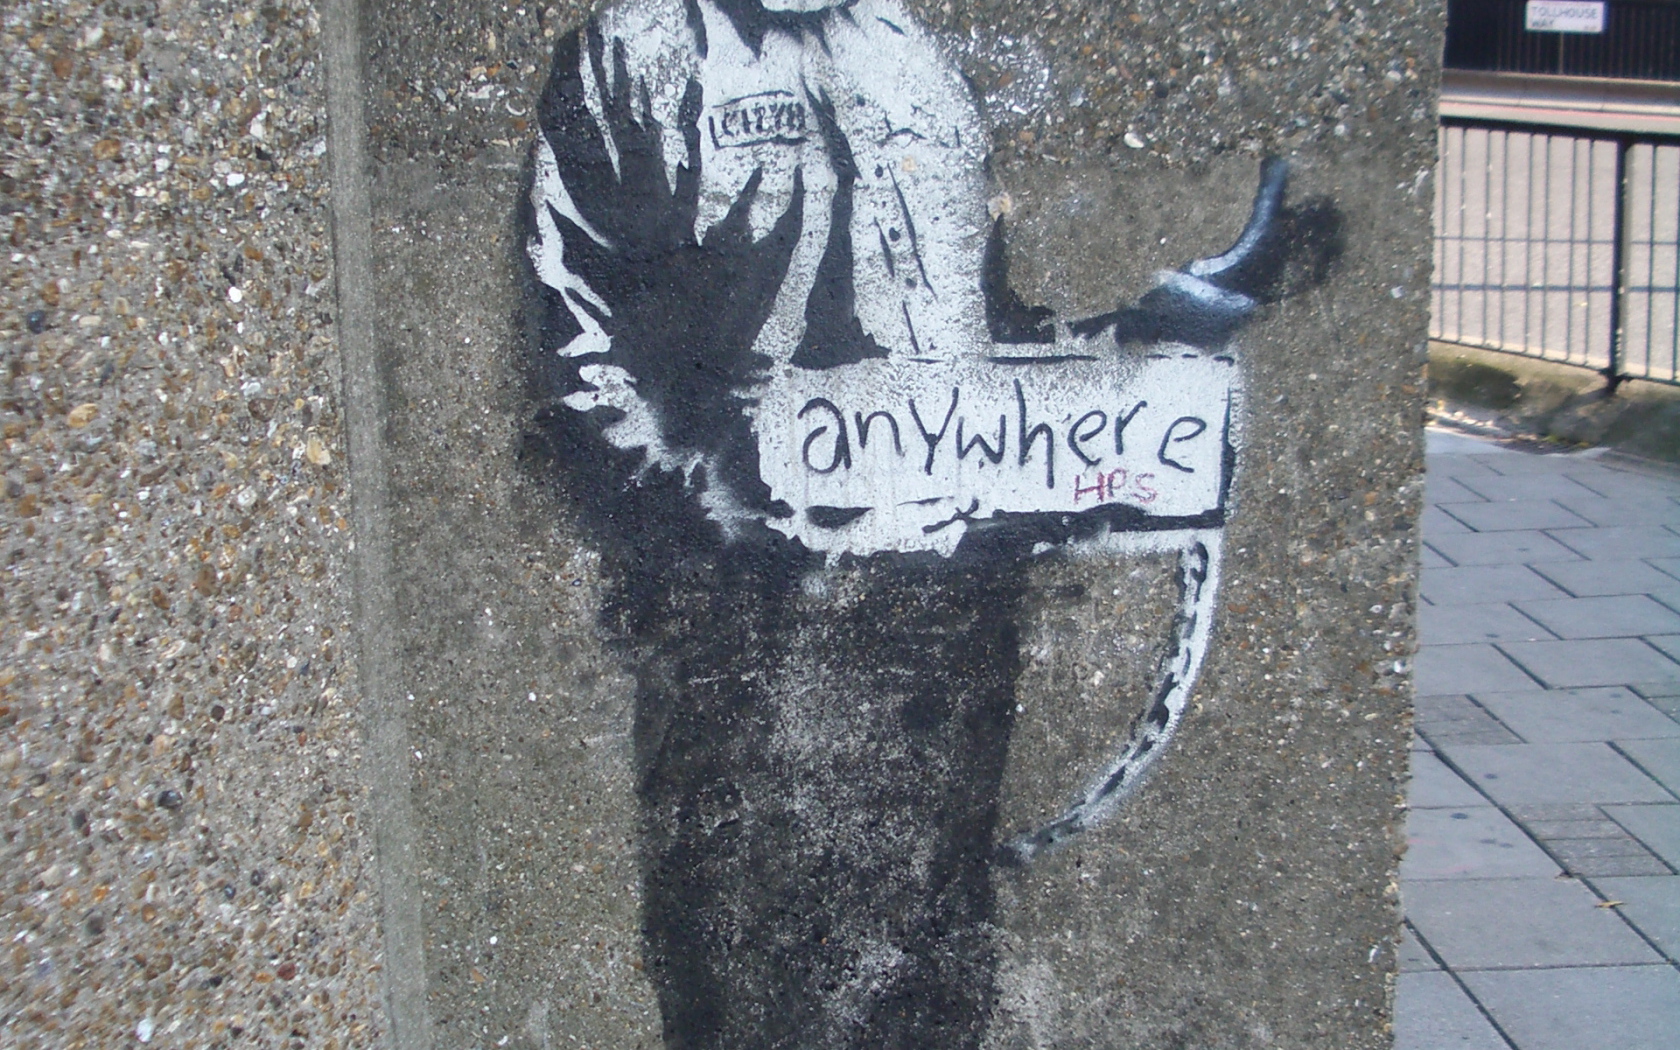 Граффити с заключённым, художник Бэнкси